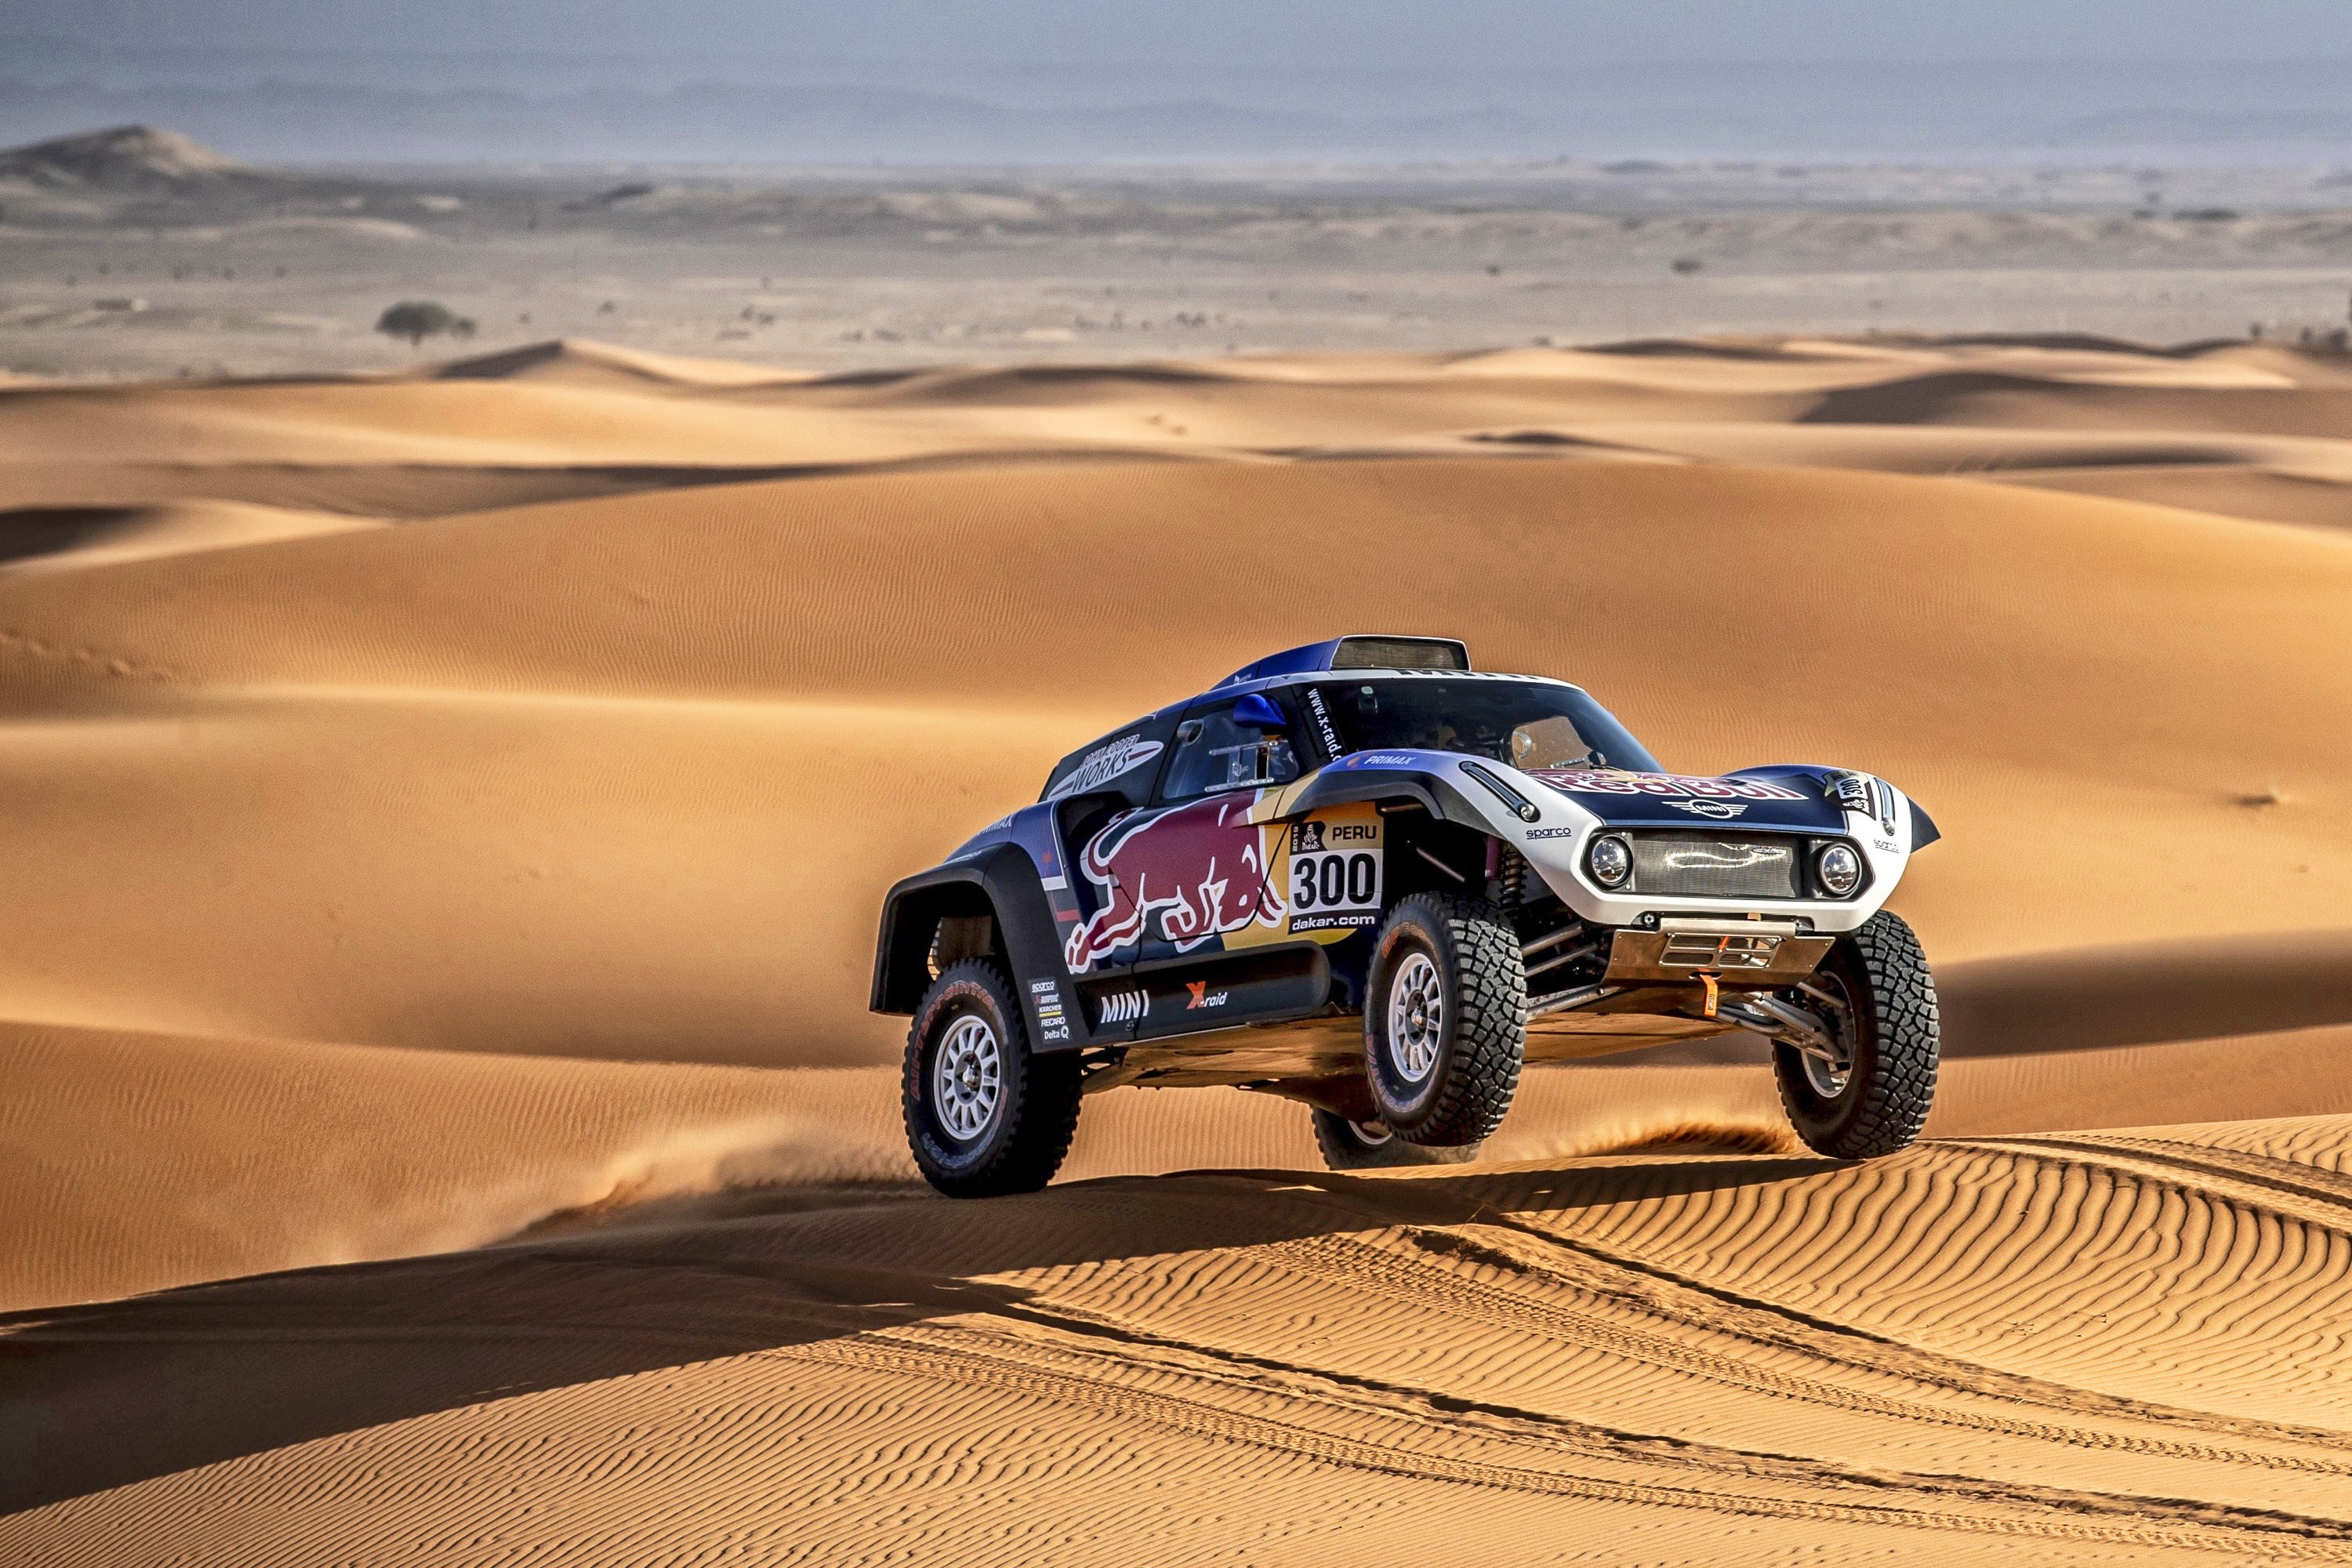 Car Desert Dune Rallying Sand Vehicle 3000x2000